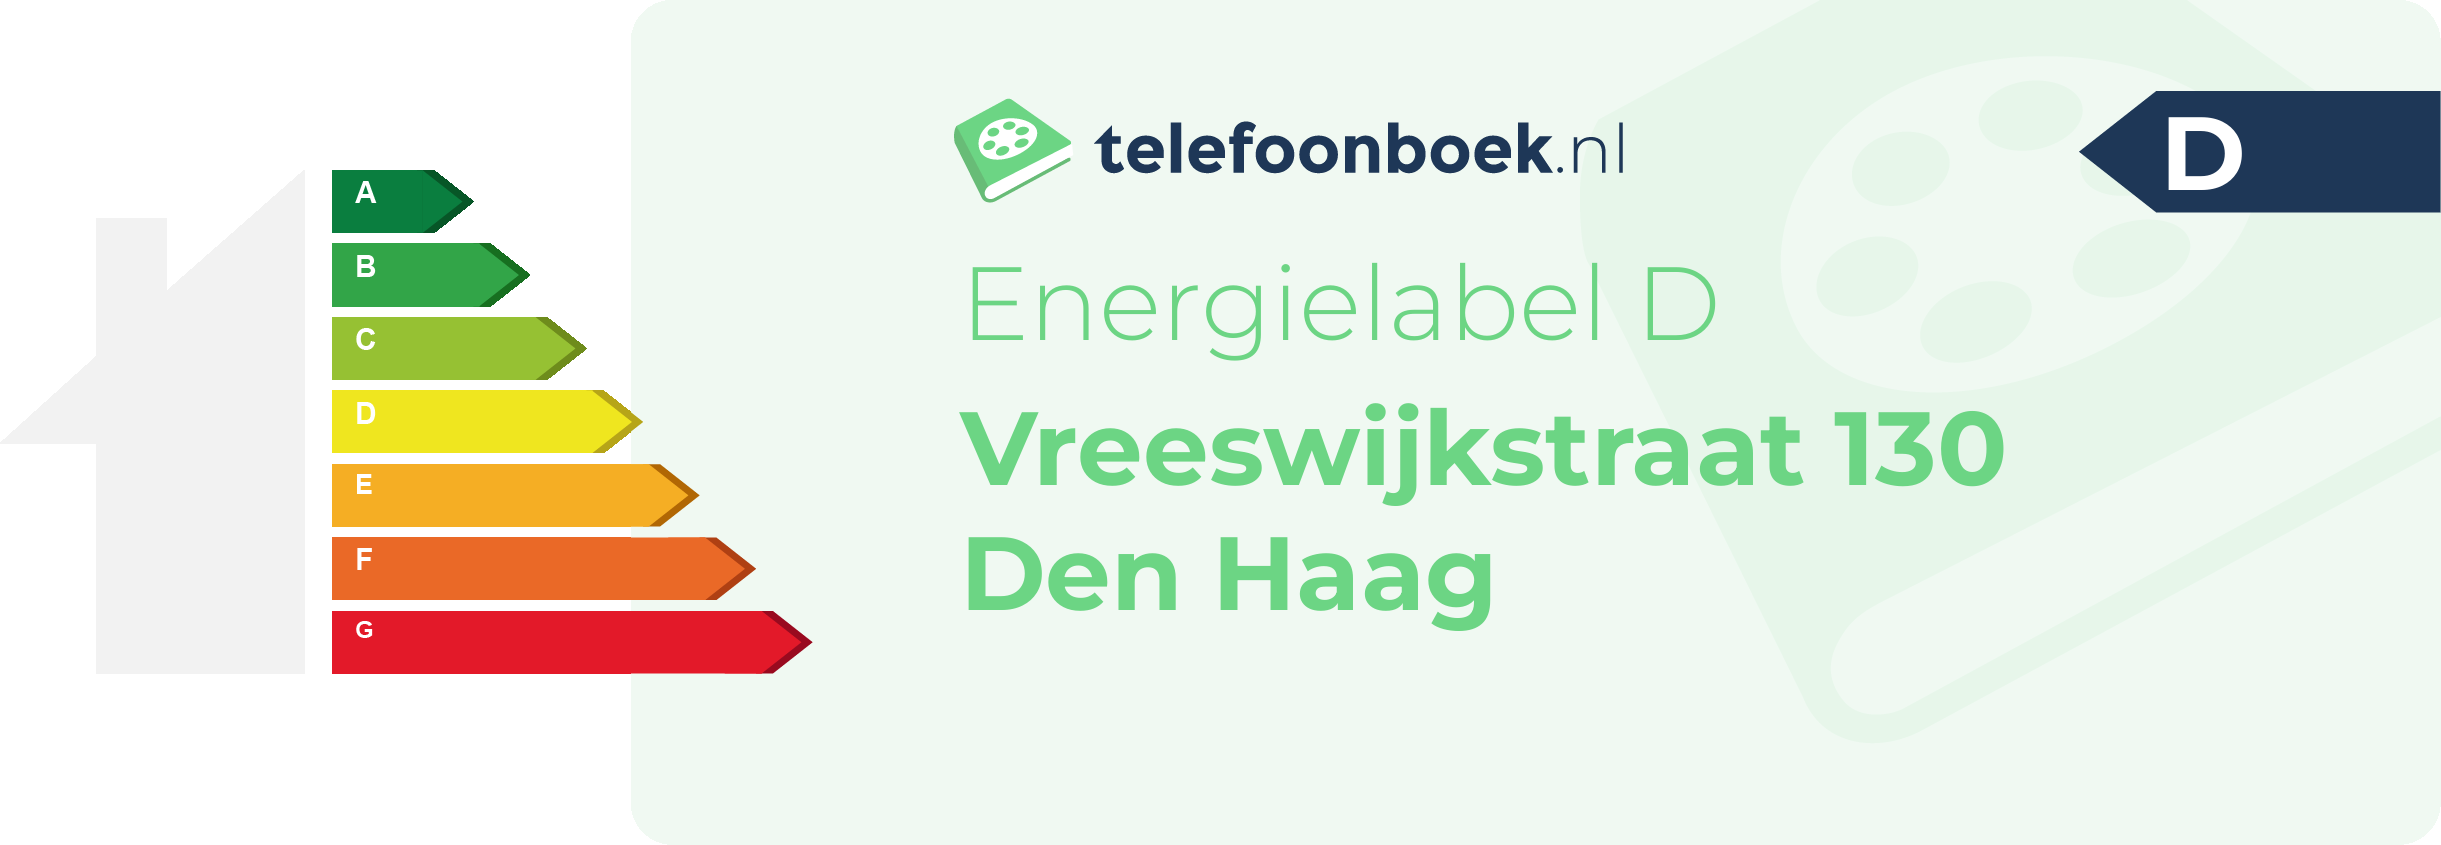 Energielabel Vreeswijkstraat 130 Den Haag